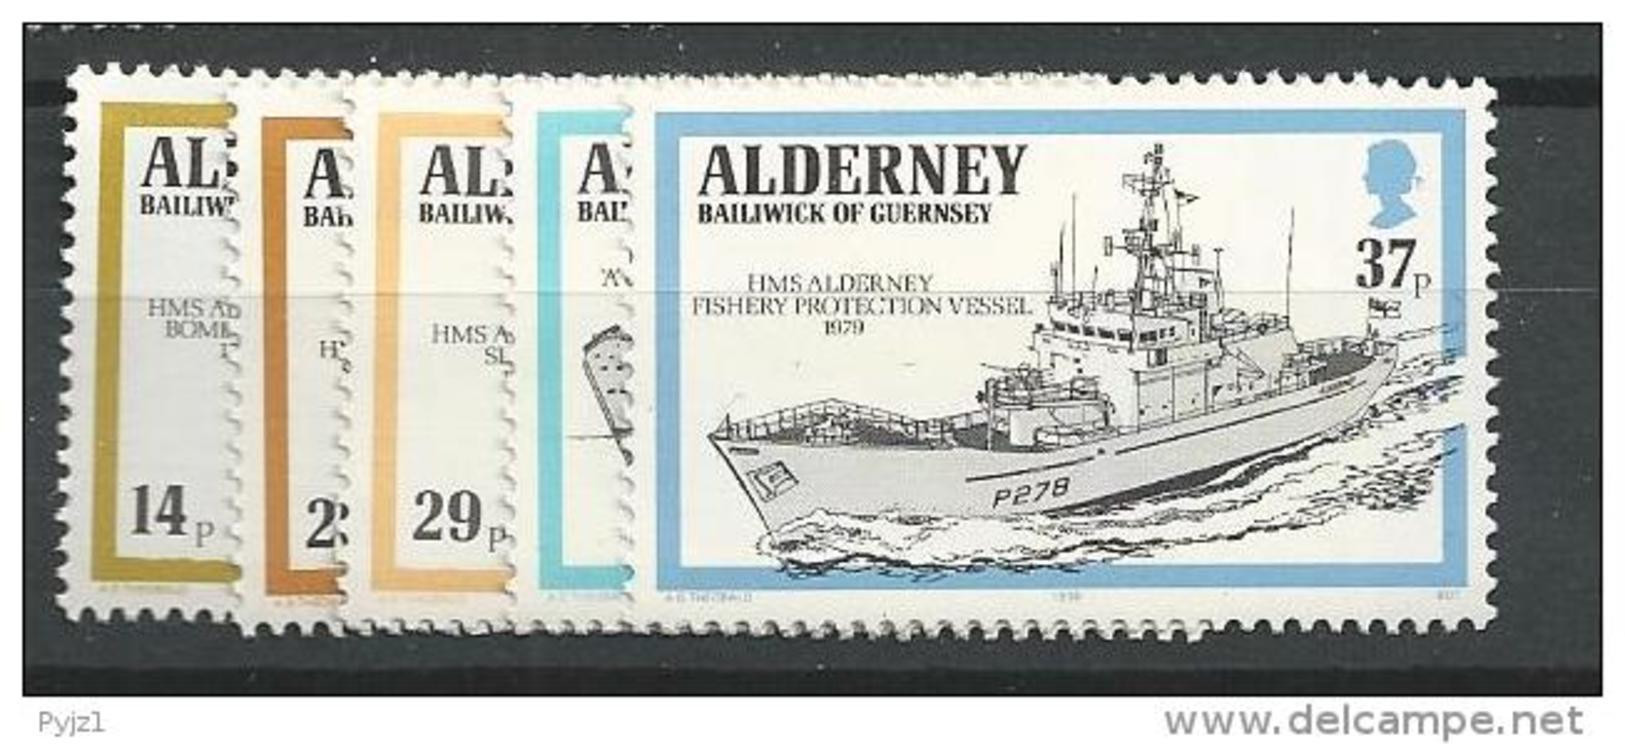 1990 MNH Alderney Postfris - Maritiem